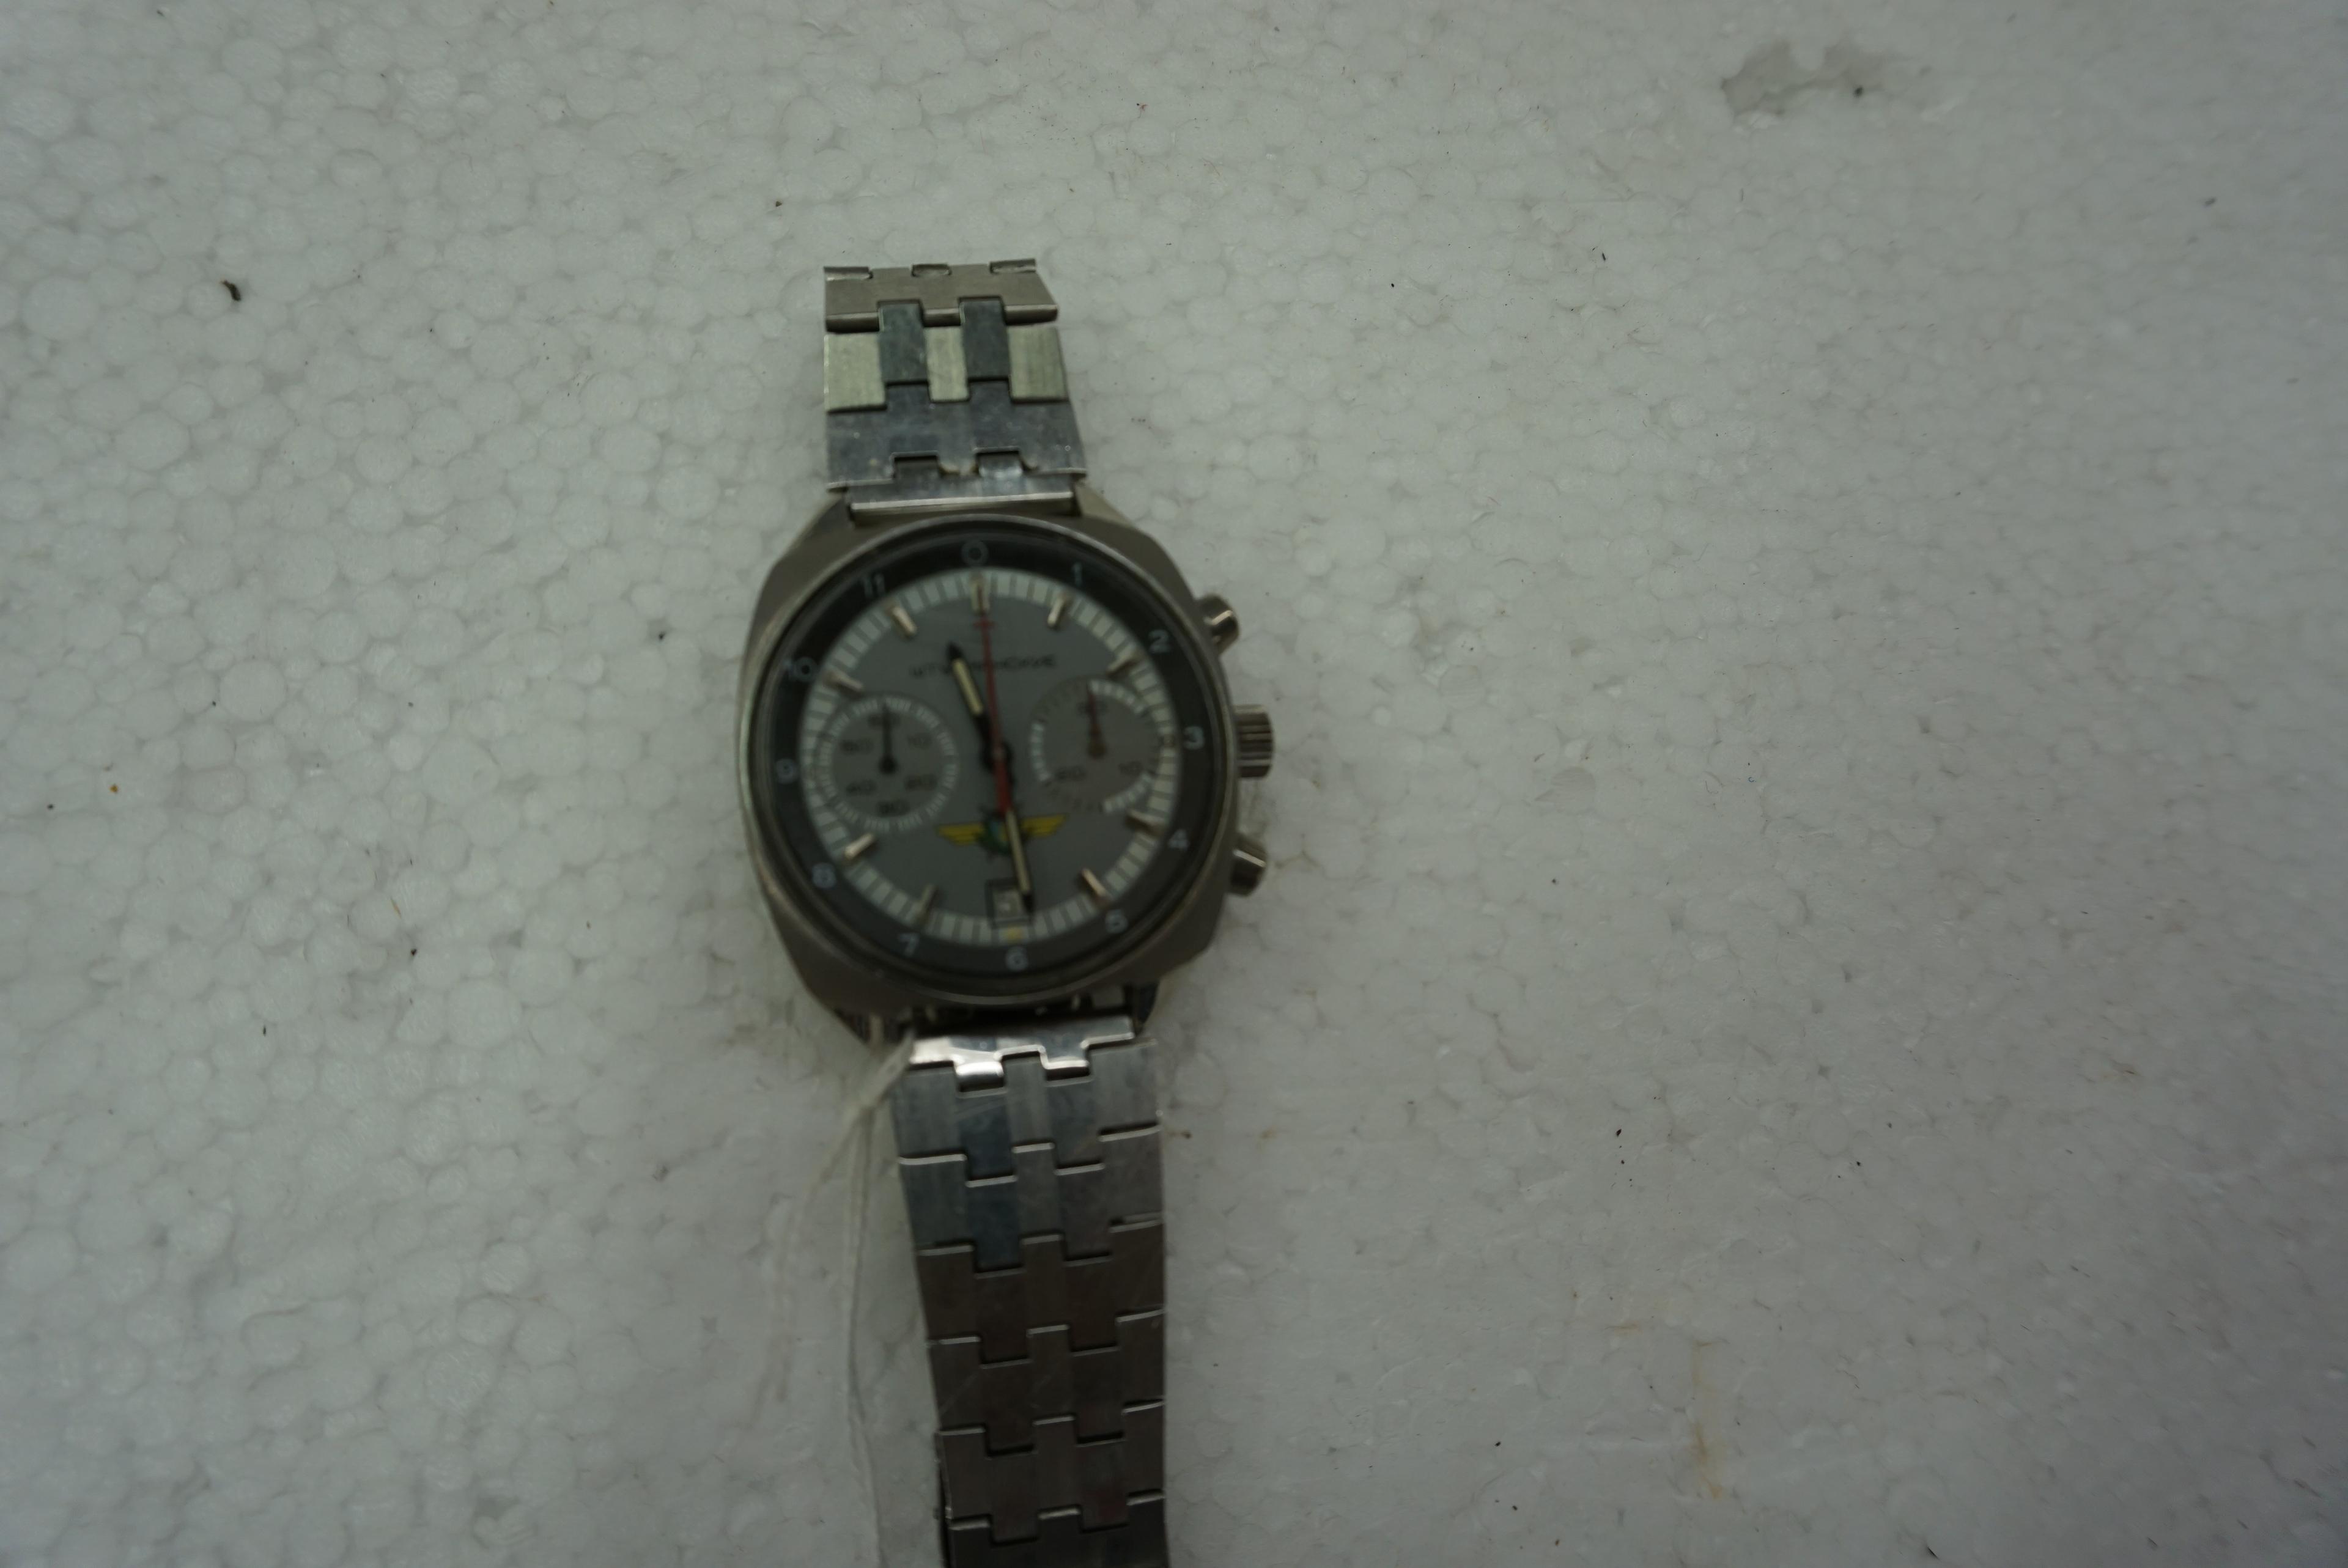 Soviet Cold War Chronograph Cosmonaut Watch "Sturmanskie", estate find, 23 Jewels, 1970's, Cold War